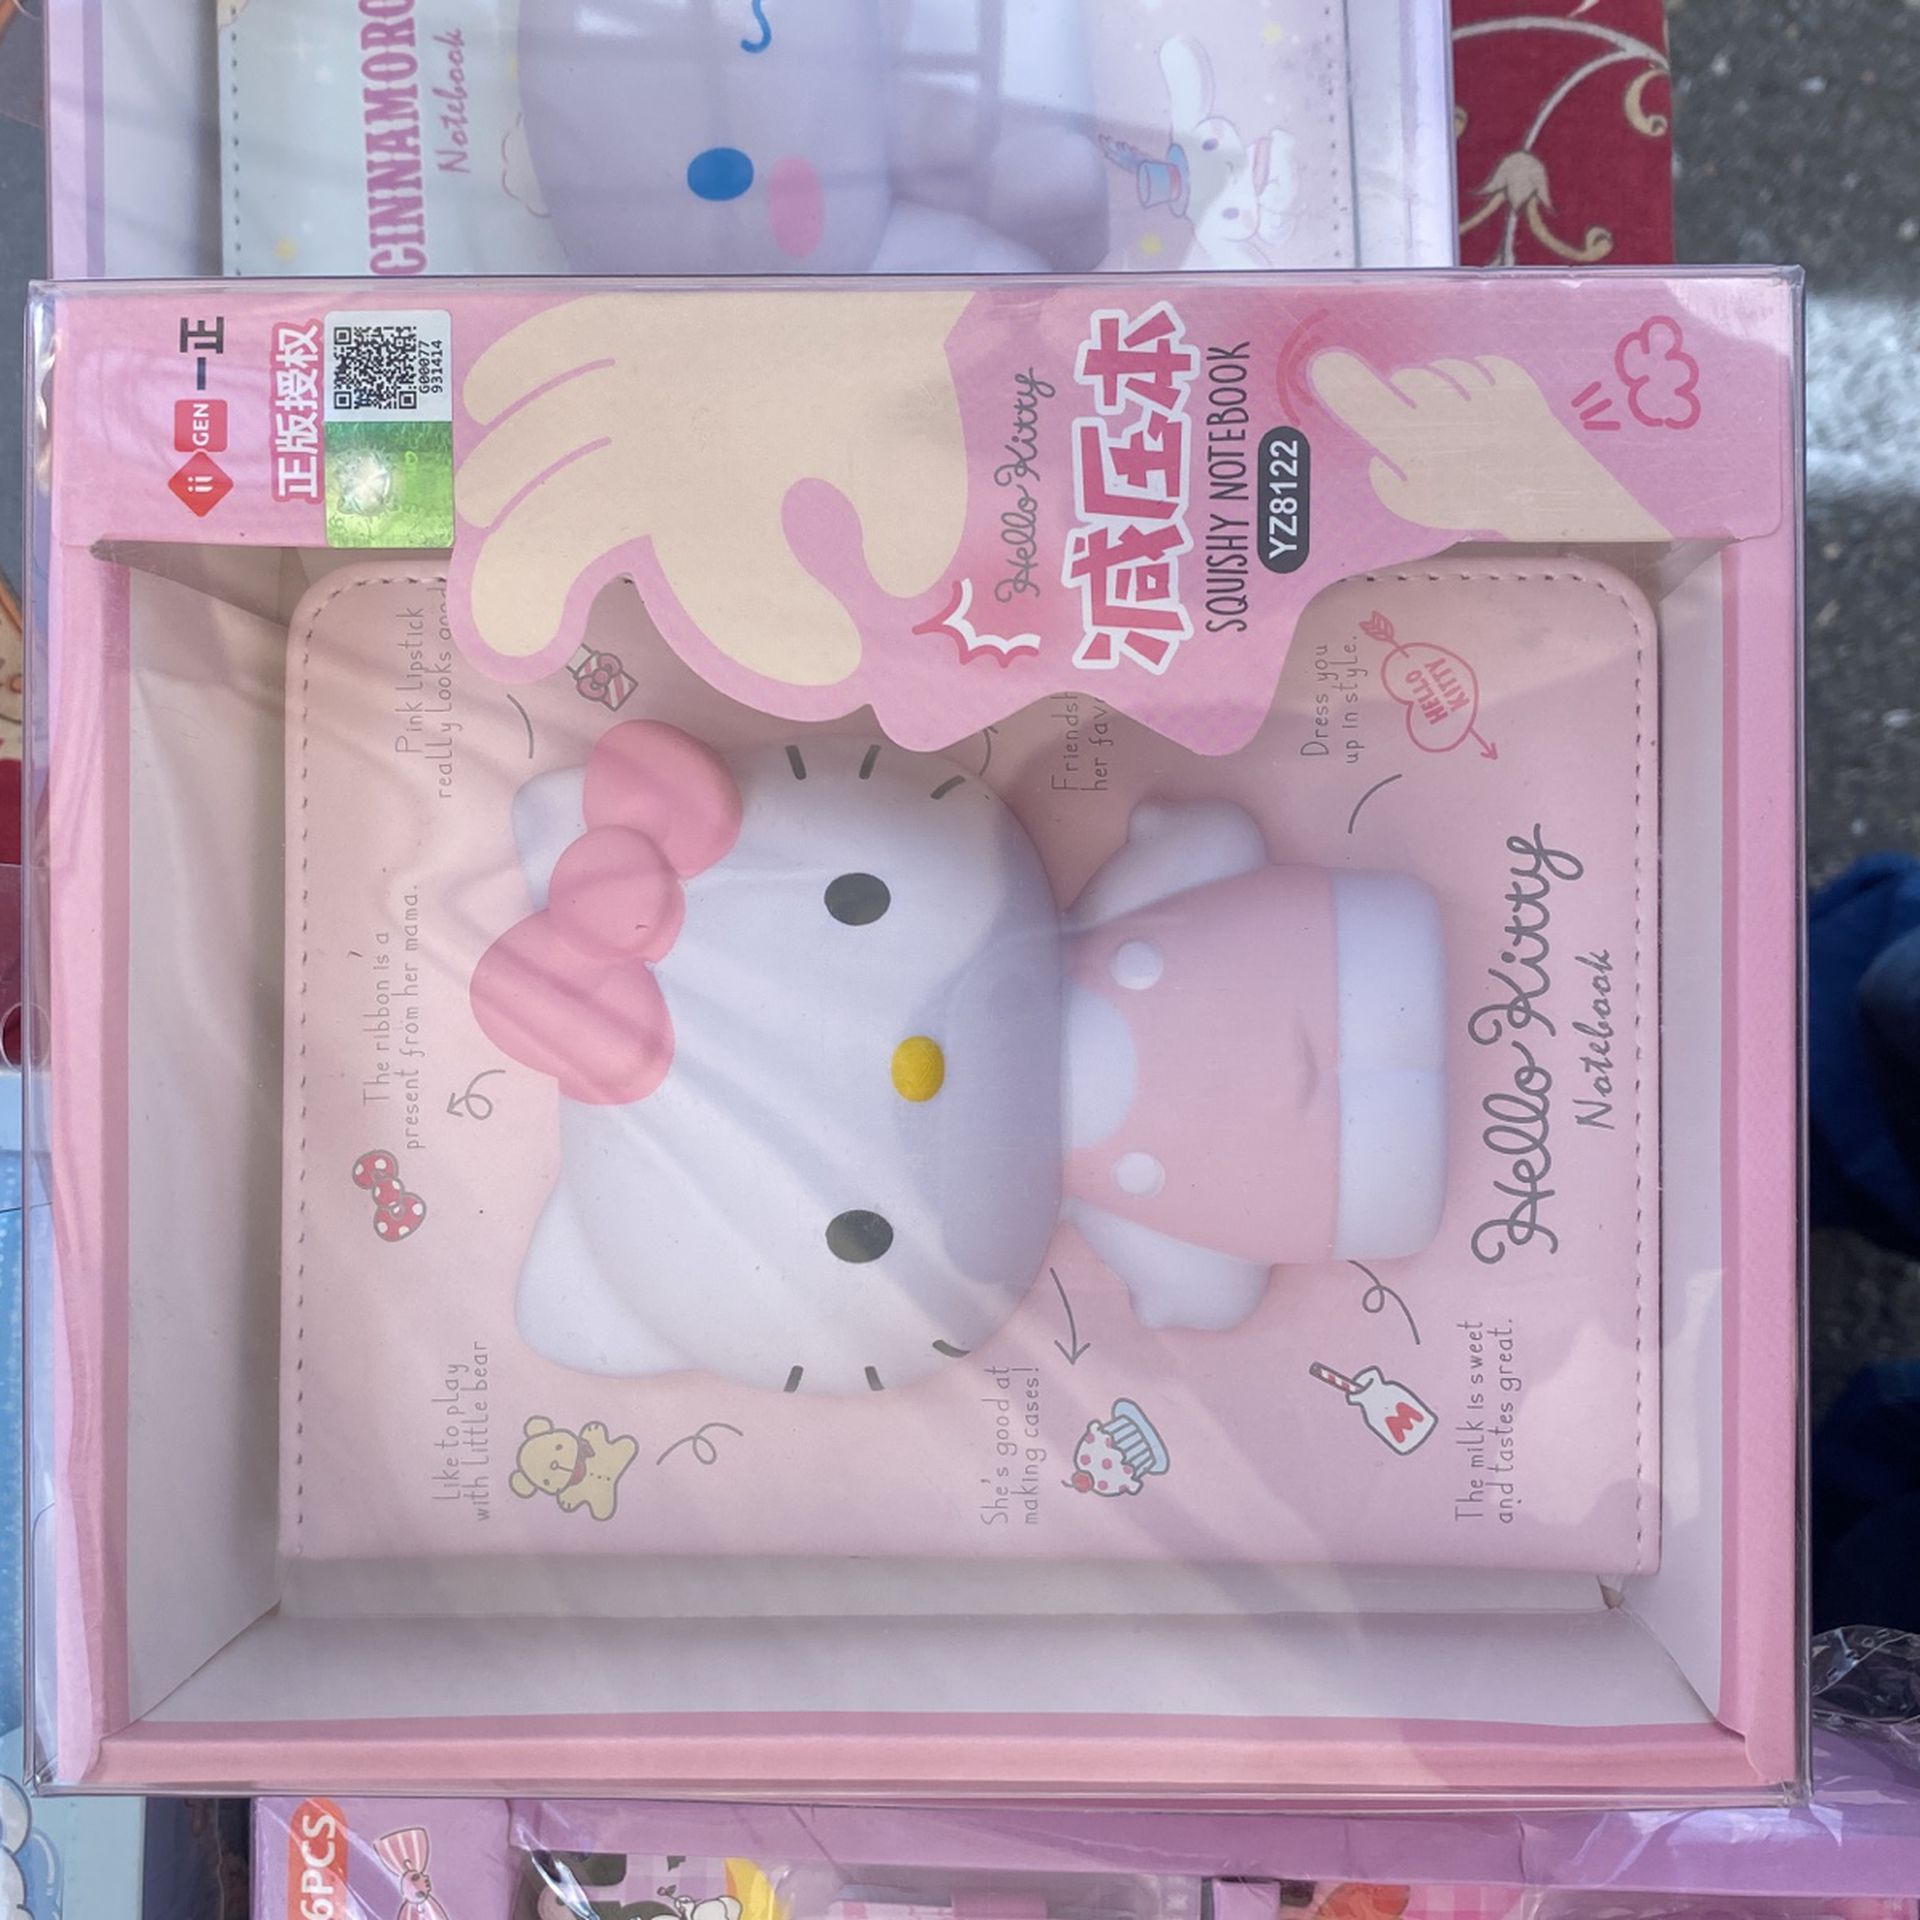 Hello Kitty Notebook 